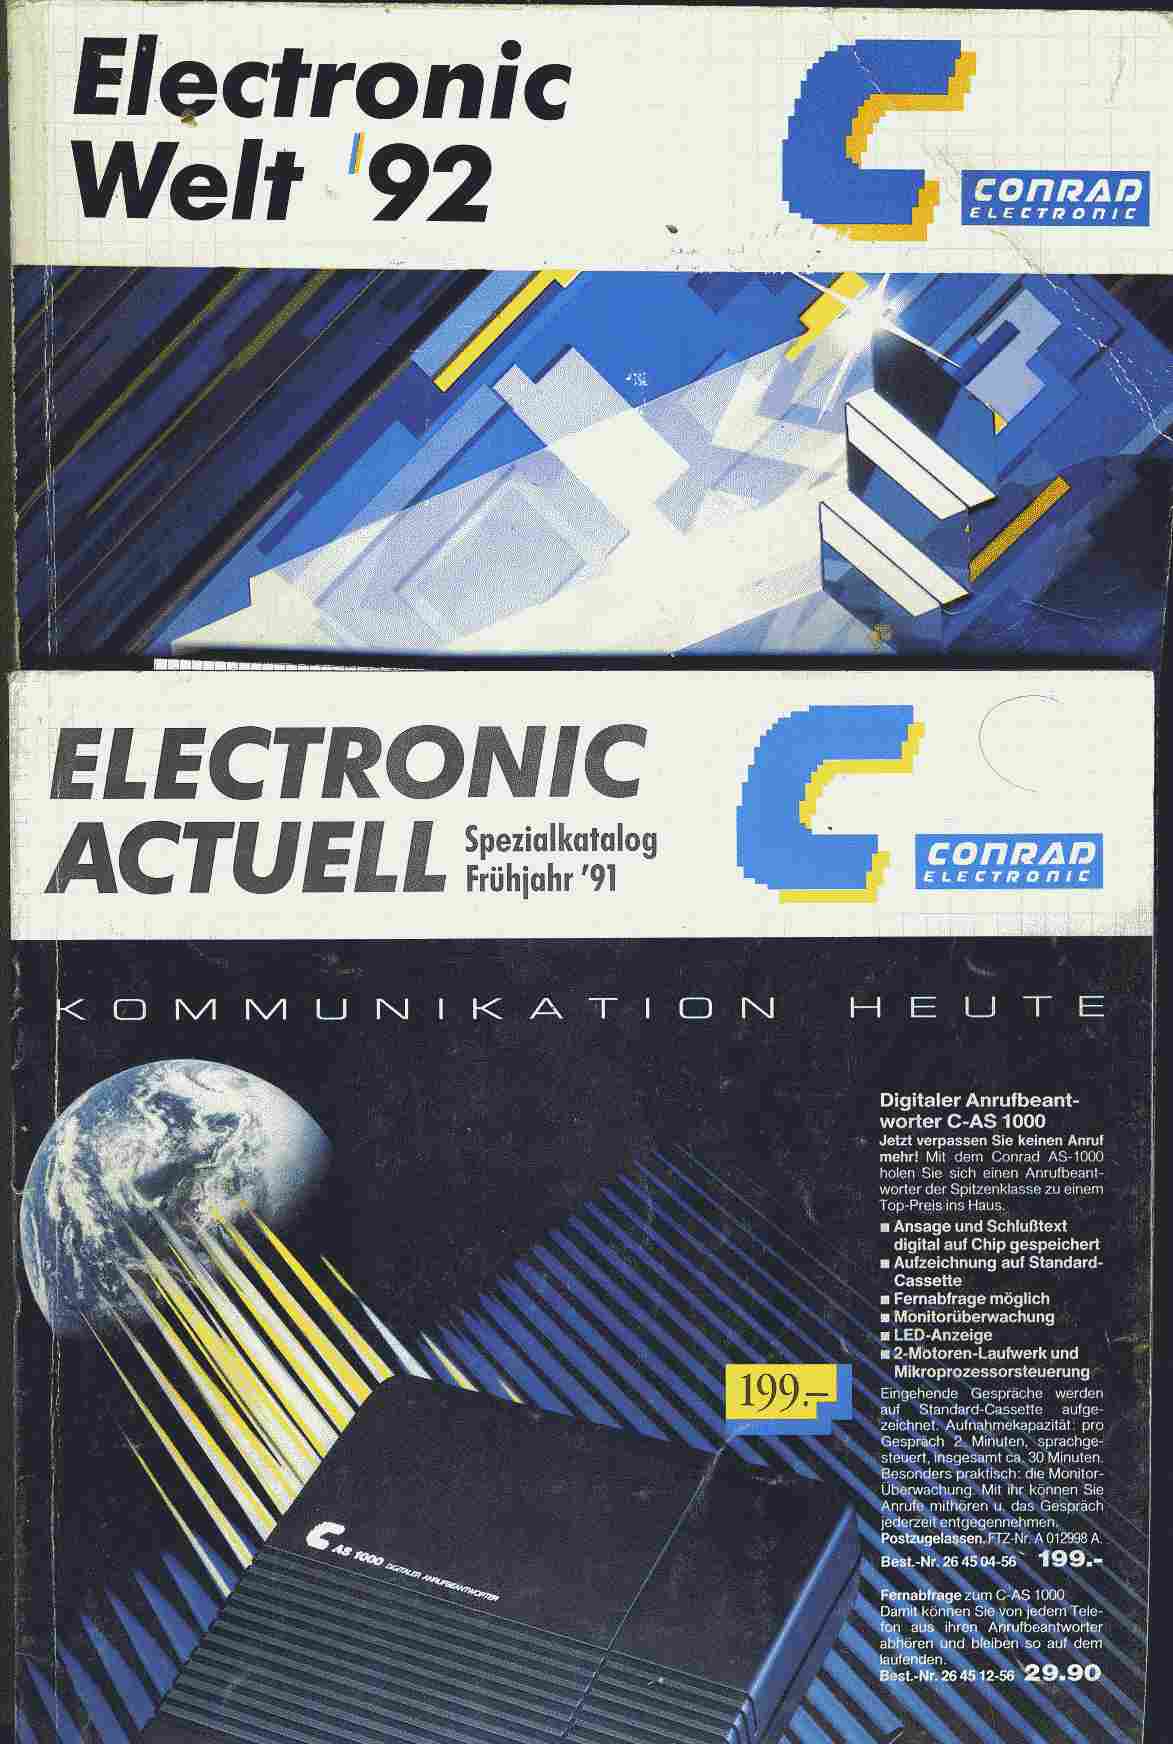 Conrad elektronik katalog